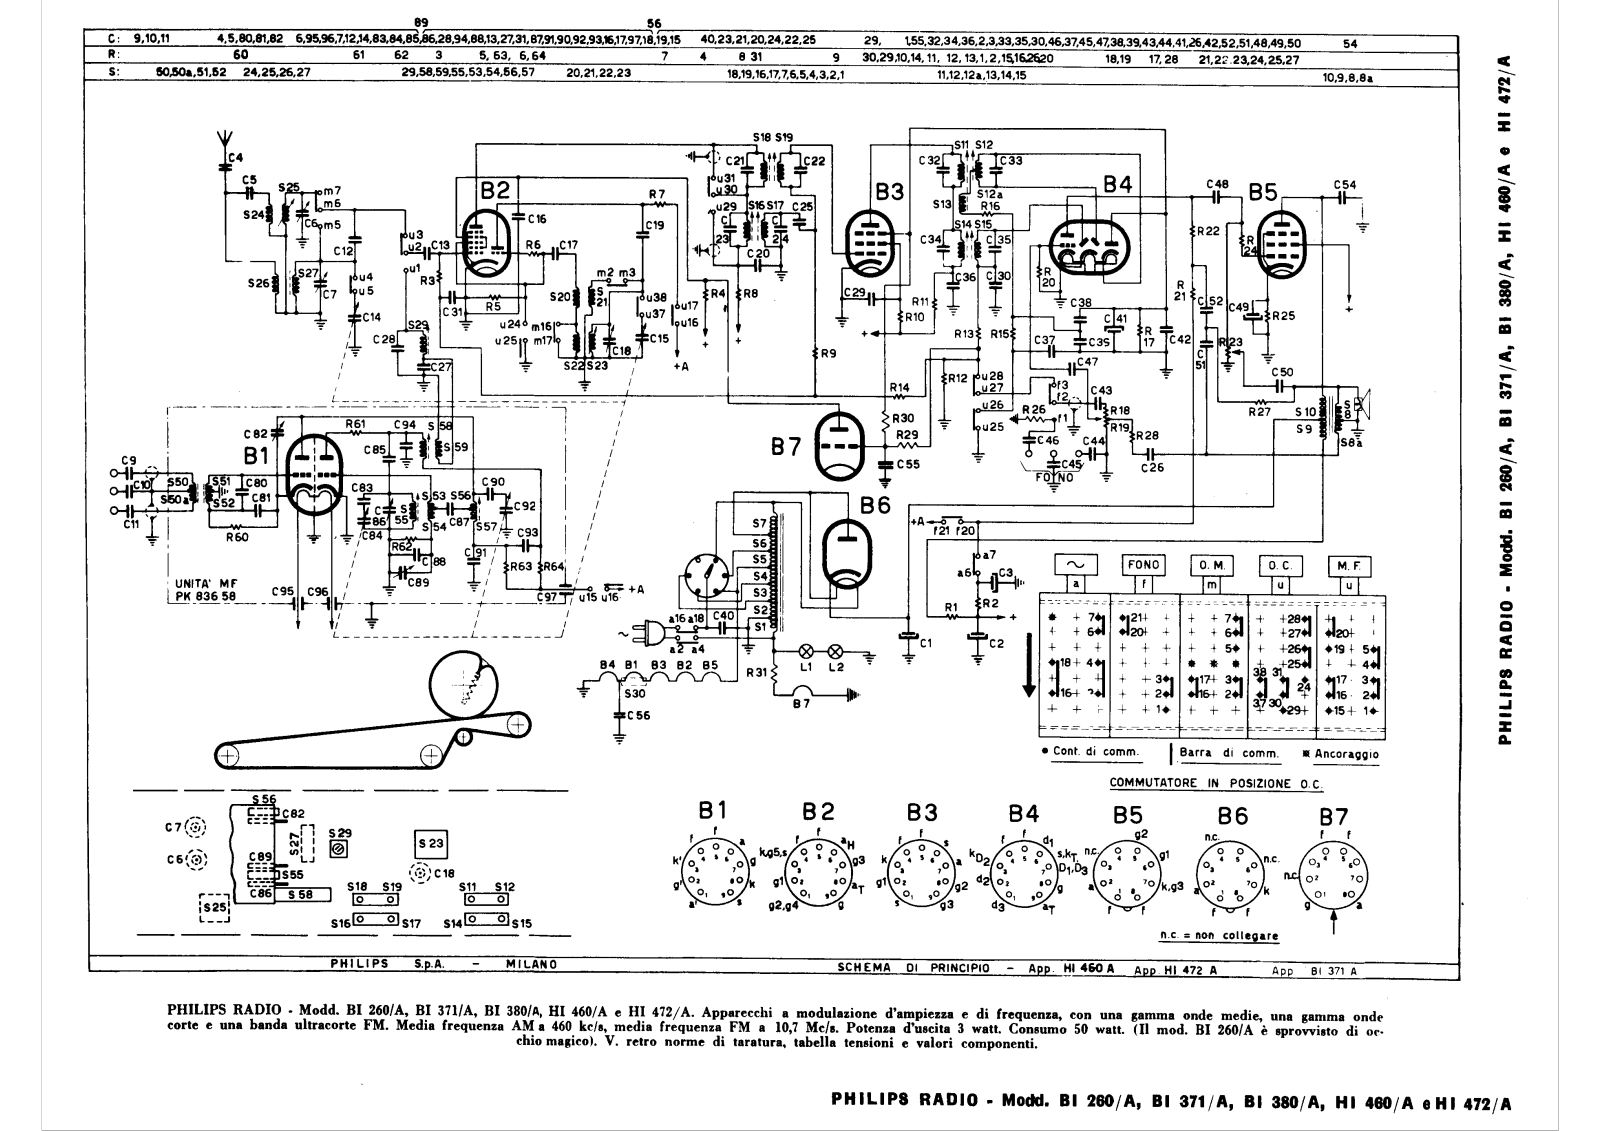 Philips bi260a, bi371a, bi380a, hi460a, hi472a schematic